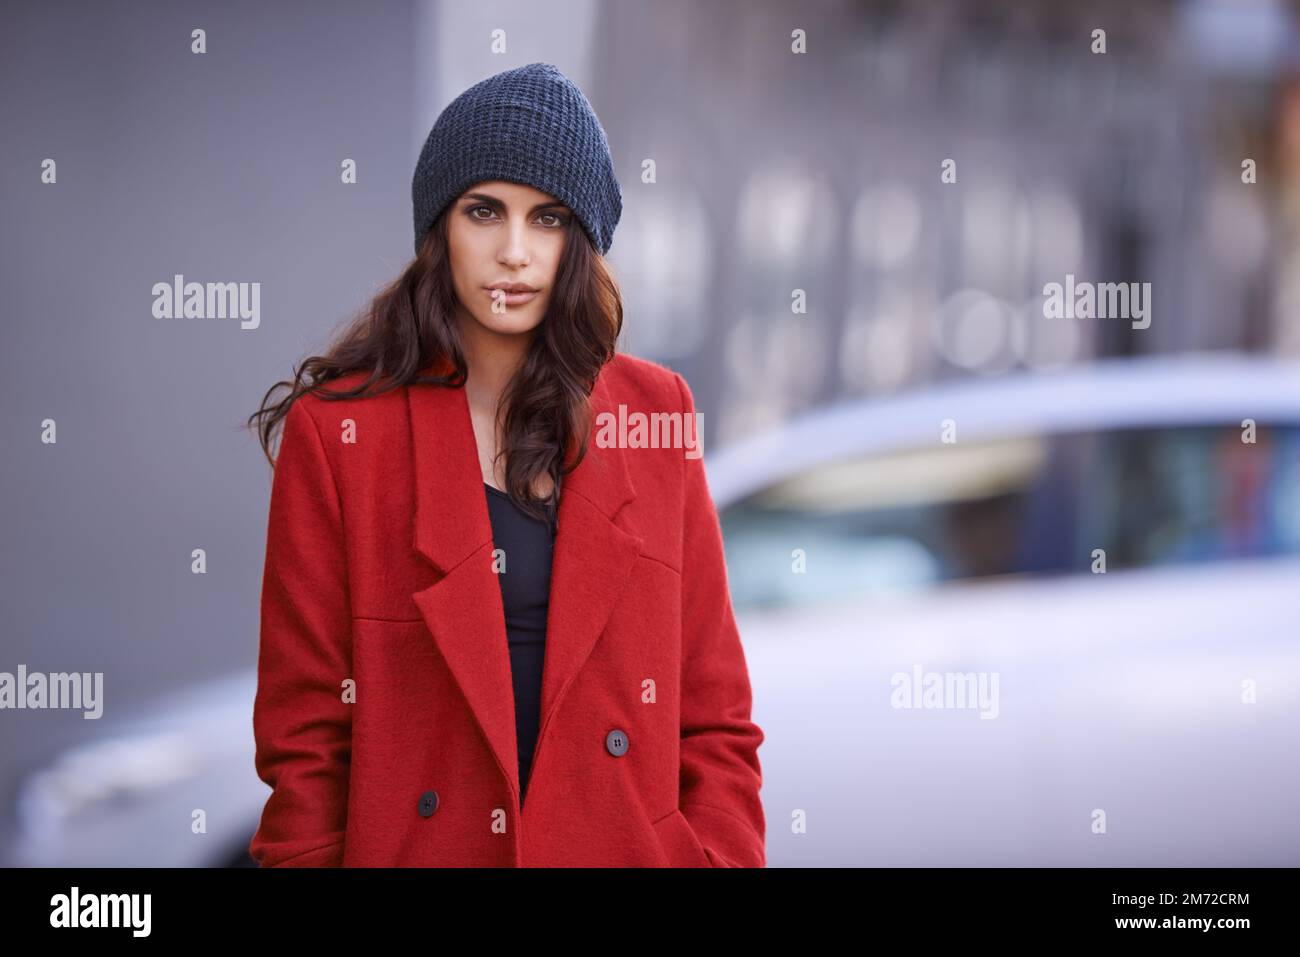 Progettato per battere il freddo. Ritratto corto di una bella giovane donna che indossa un cappotto rosso invernale e un berretto. Foto Stock